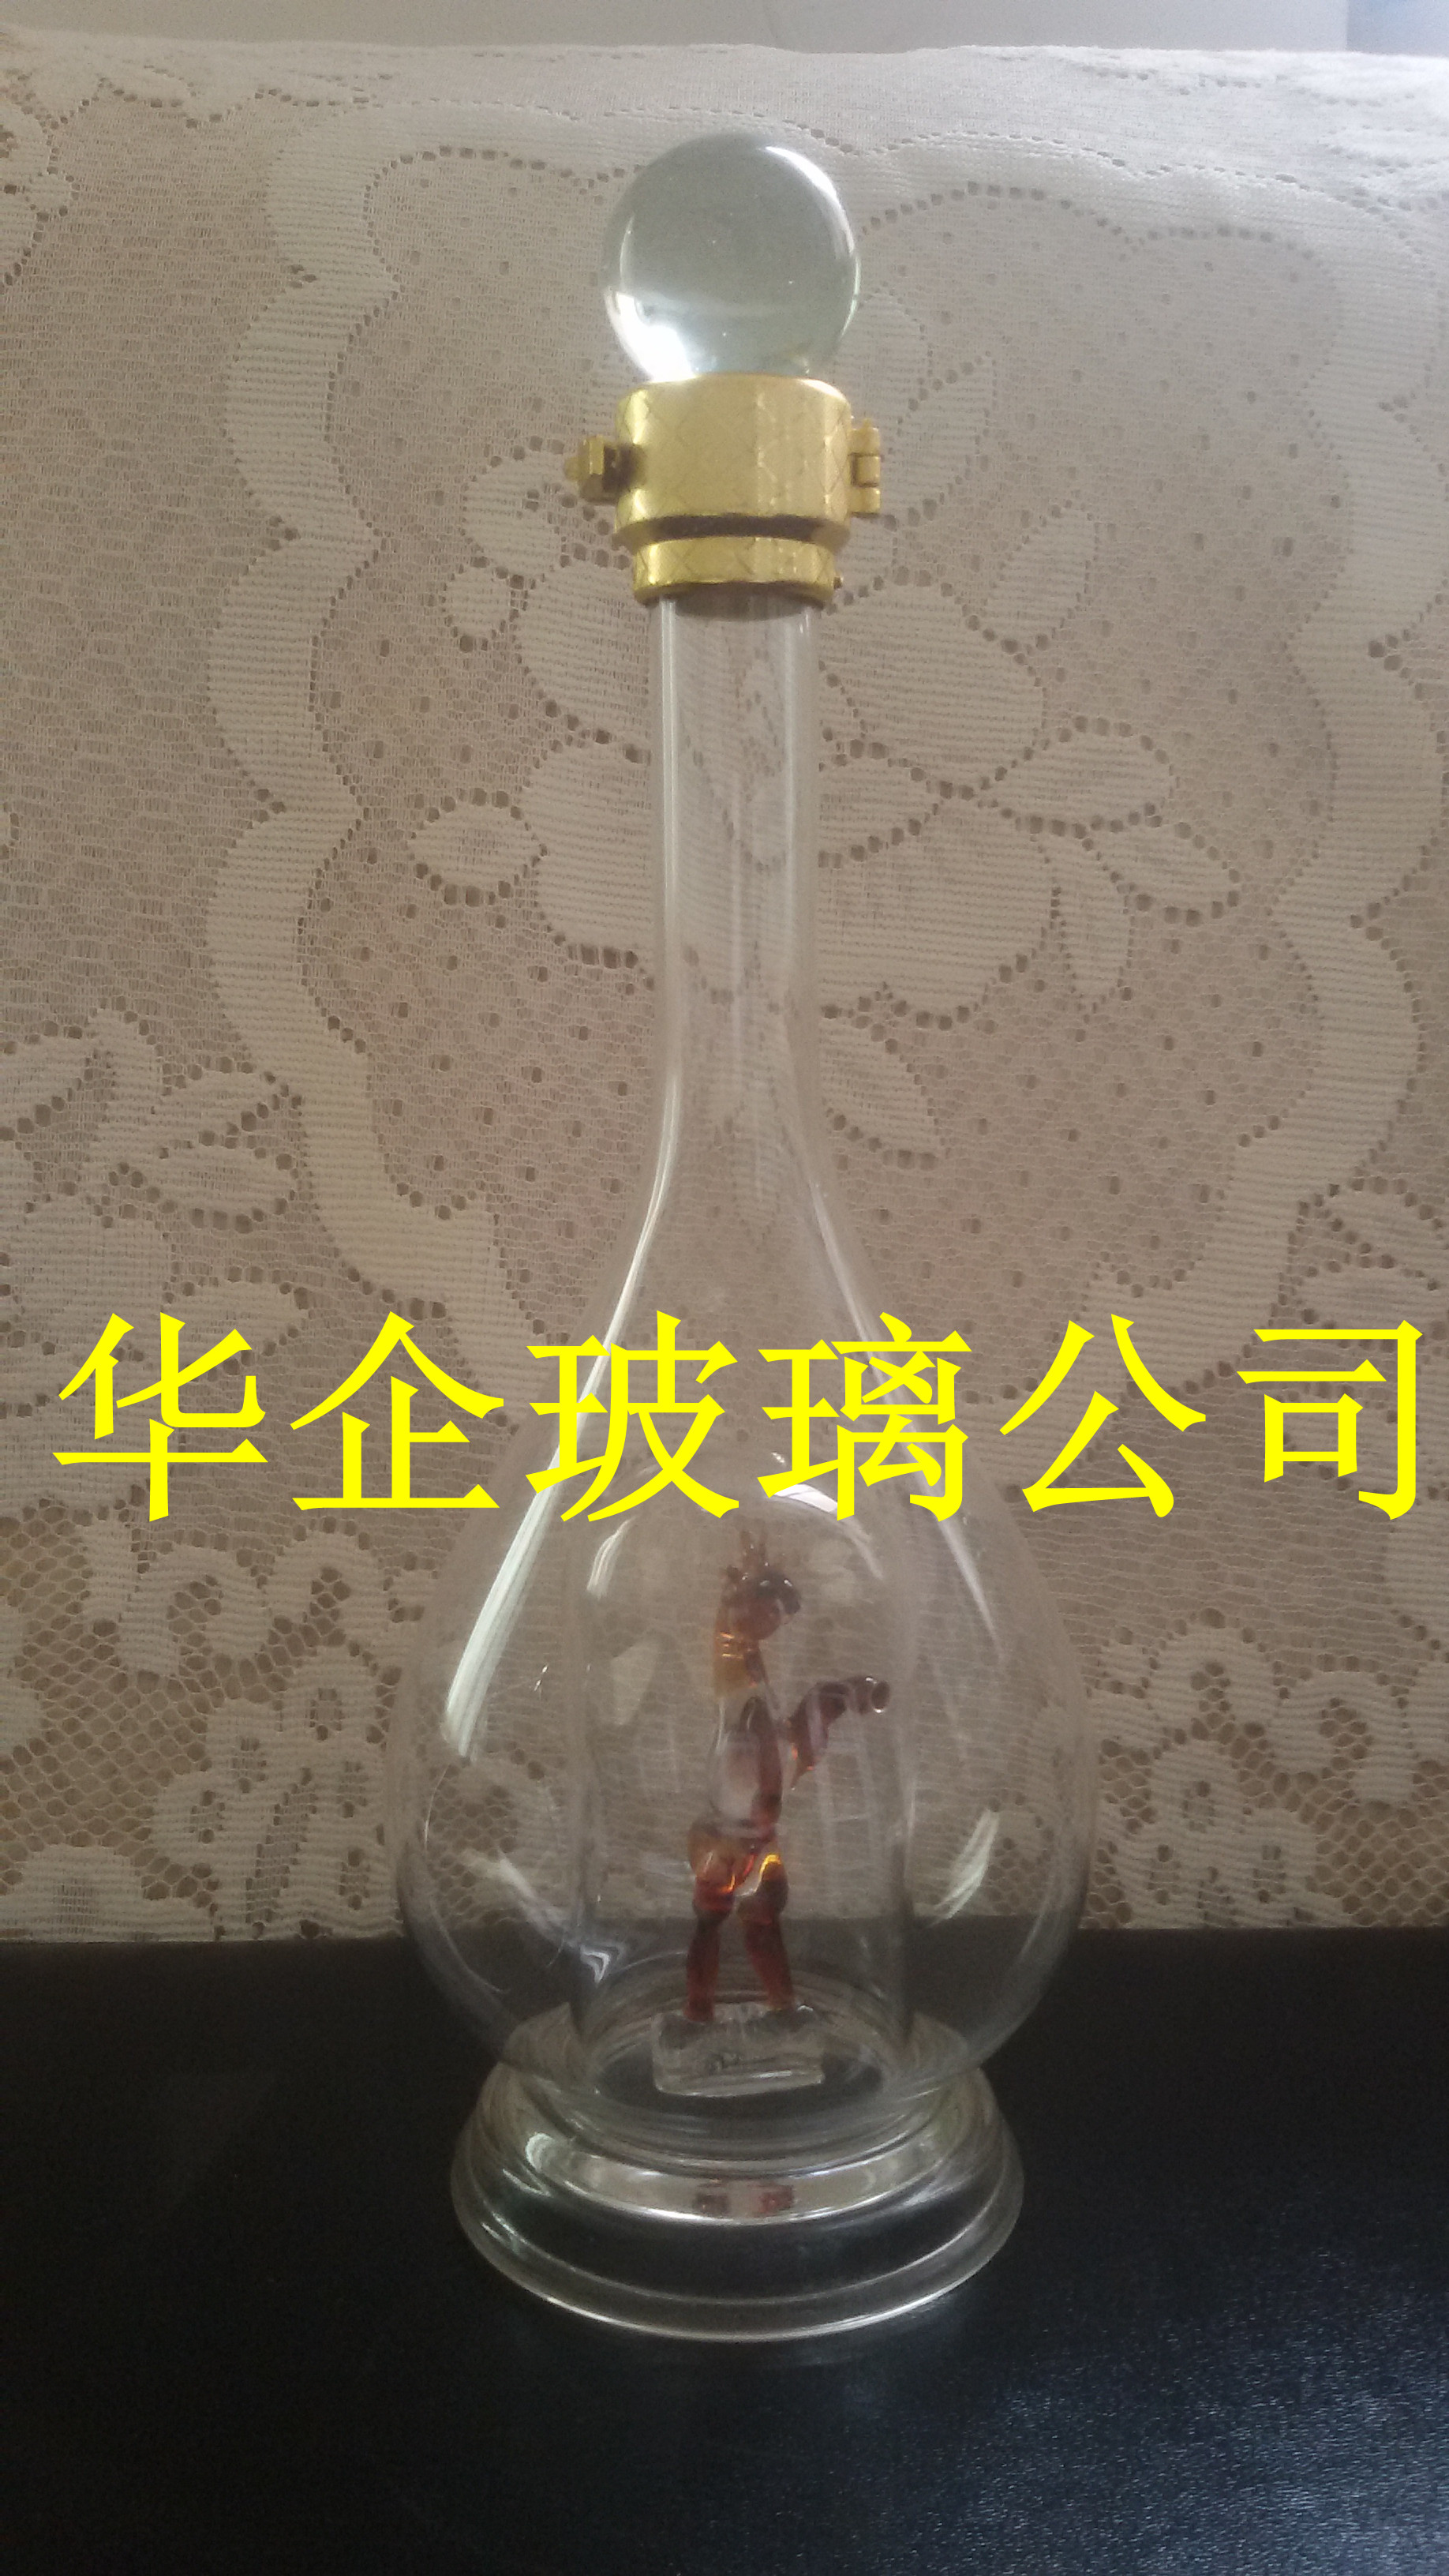 沧州市玻璃帆船酒瓶生肖马瓶工艺酒瓶厂家供应用于环扣 盖子的玻璃帆船酒瓶生肖马瓶工艺酒瓶，玻璃工艺酒瓶，手工艺术玻璃